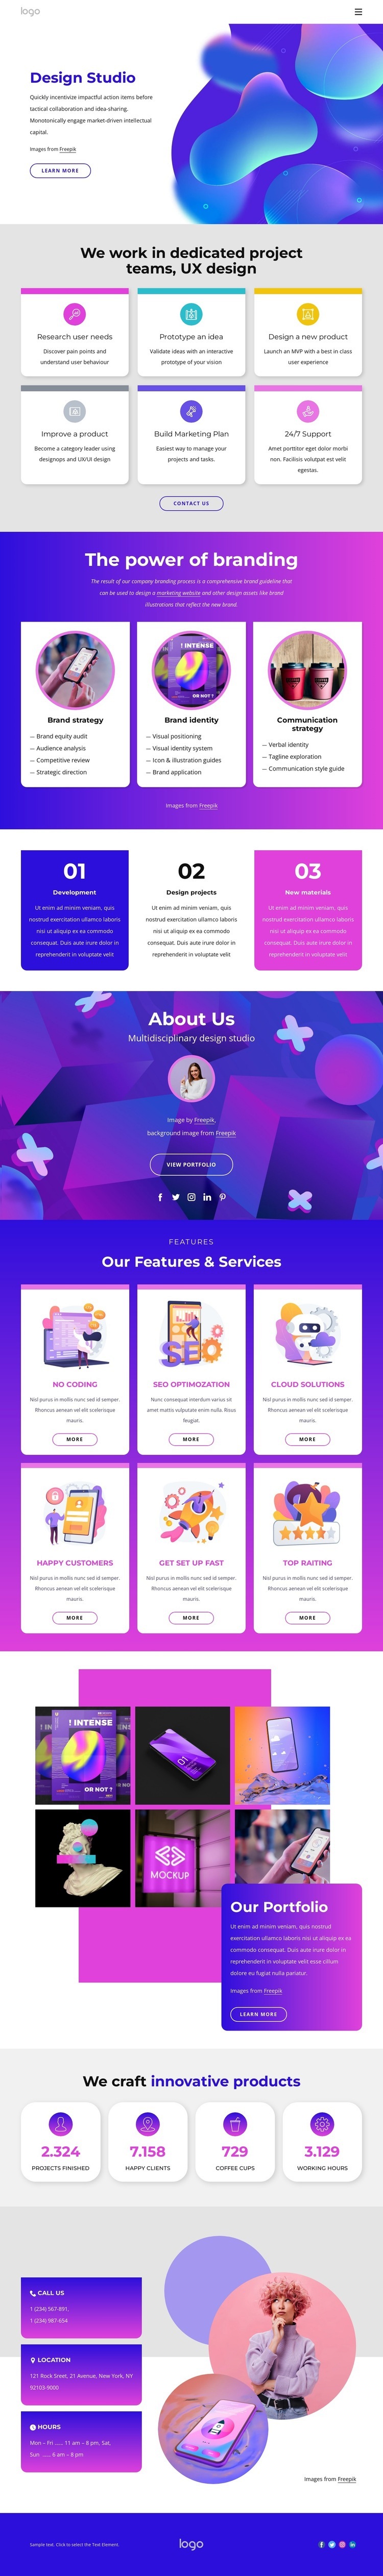 Web design company Homepage Design